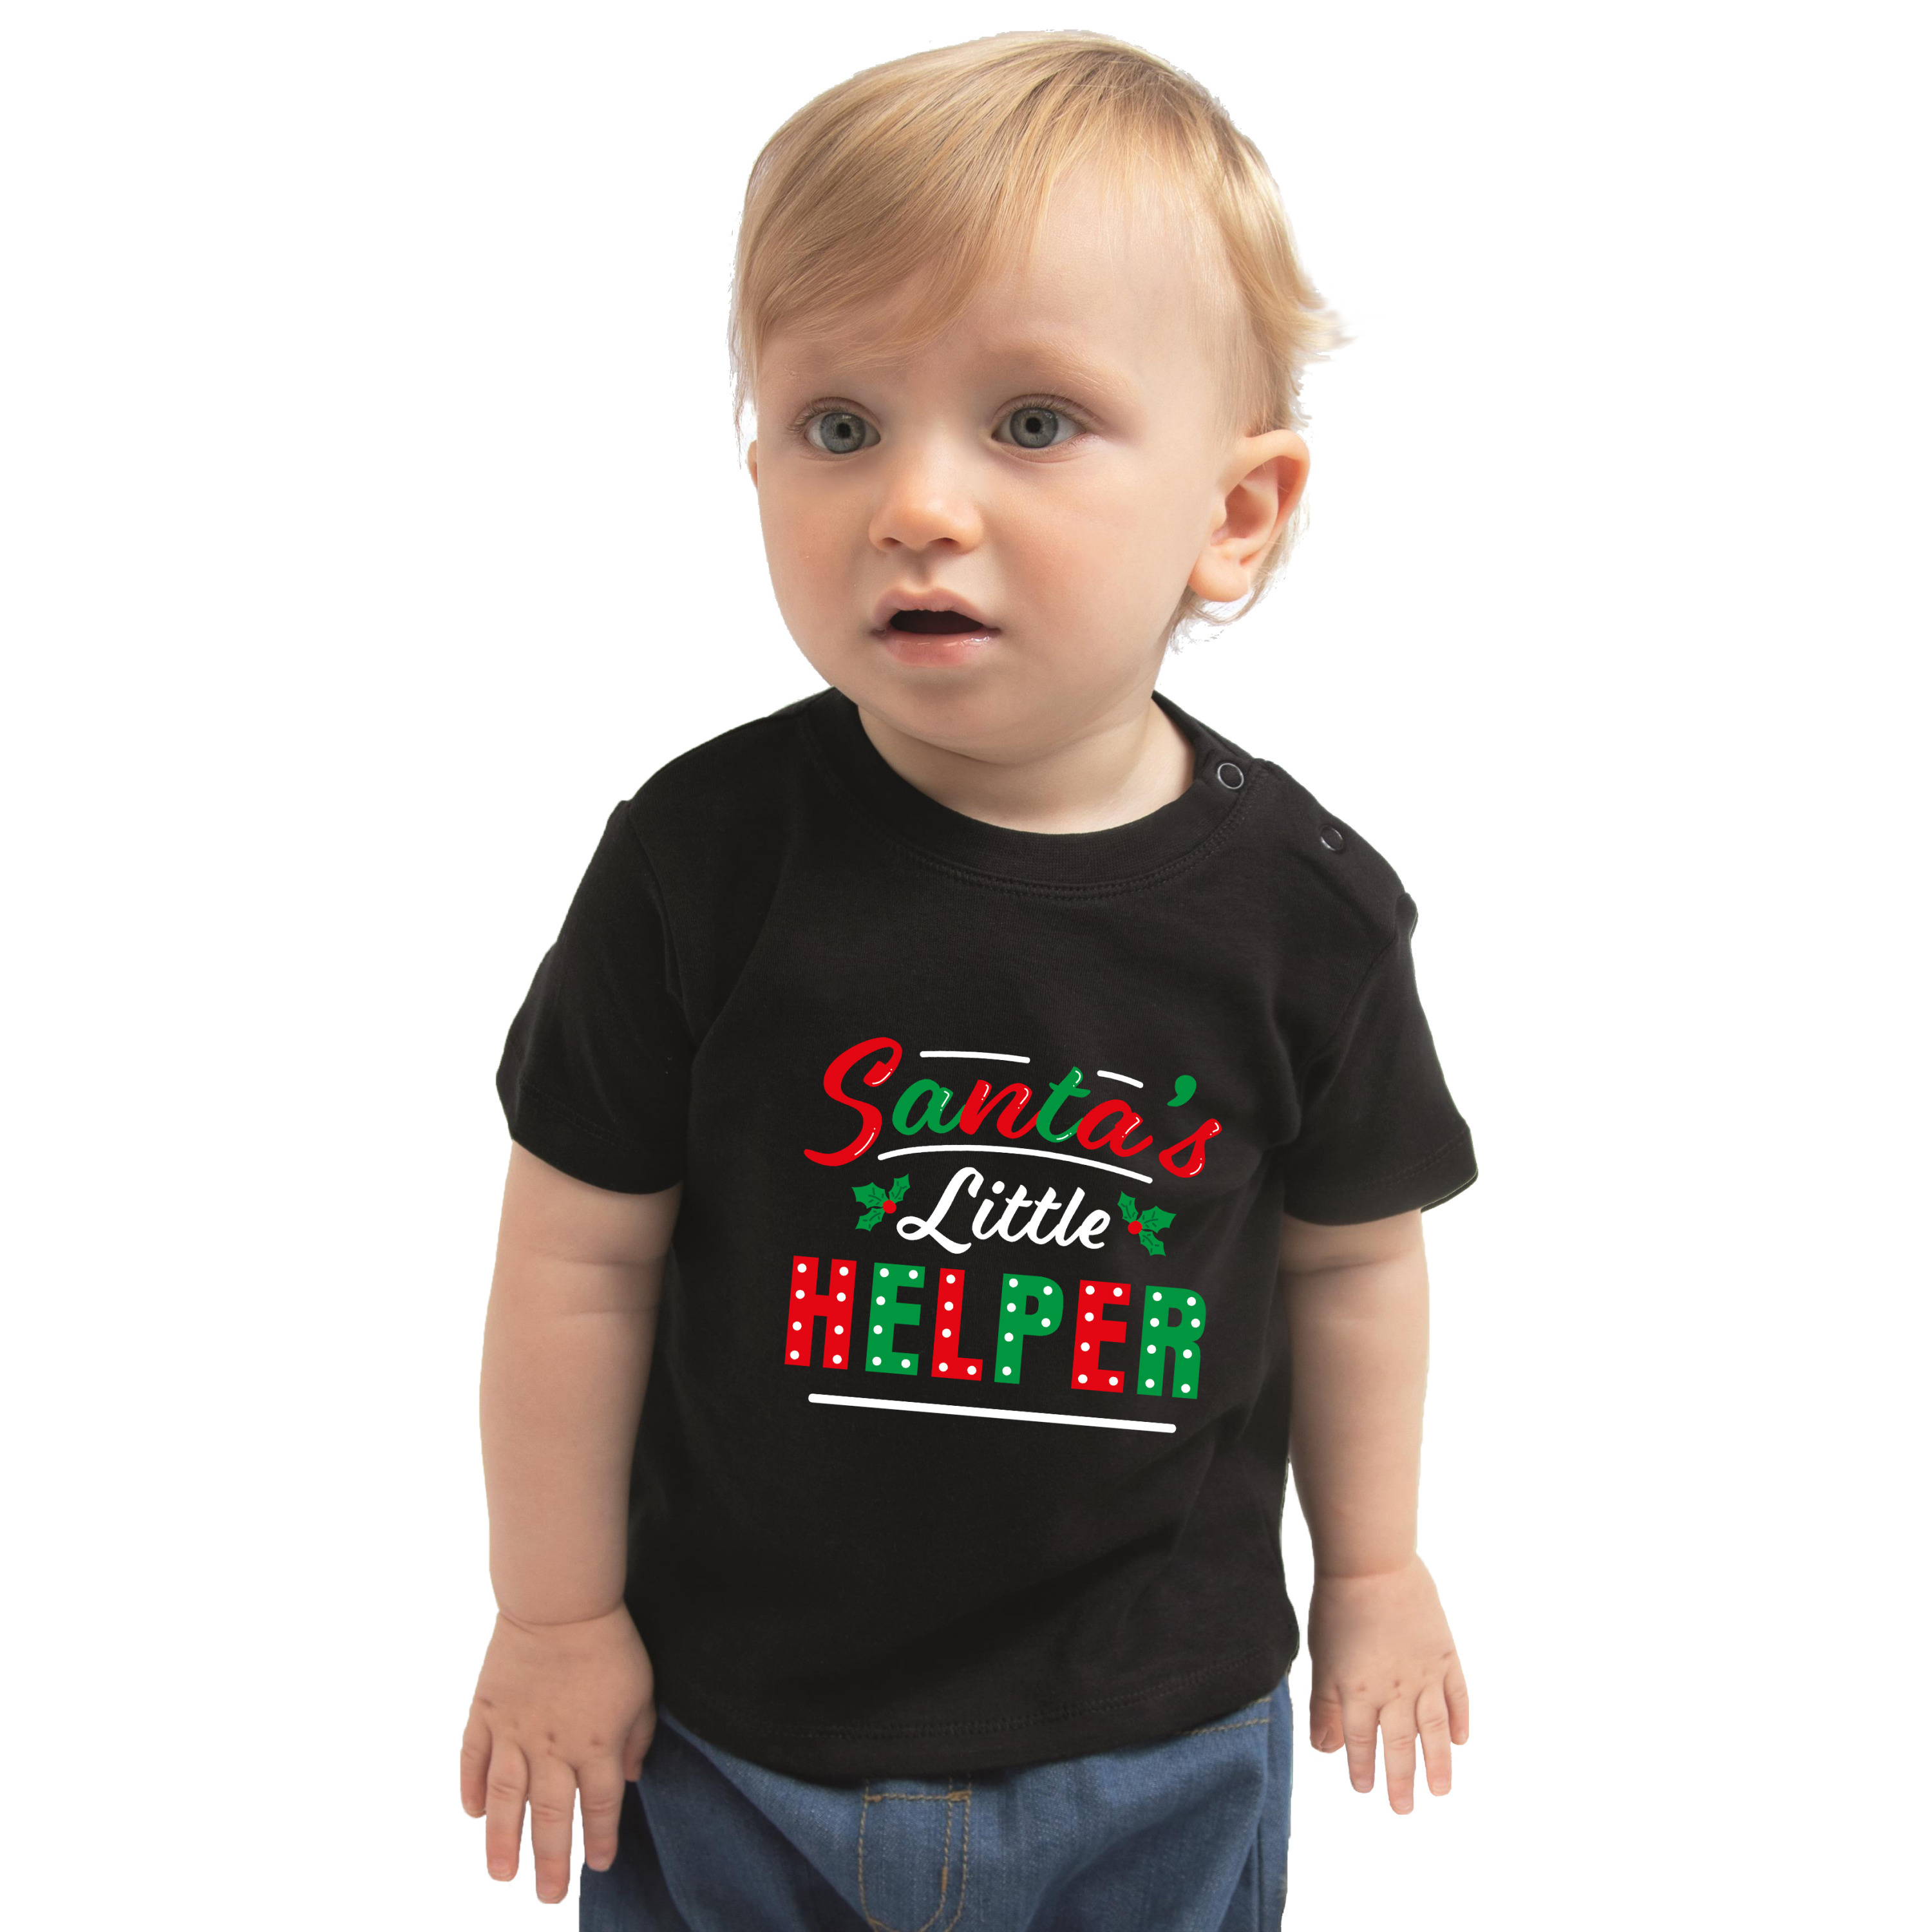 Santas little helper-Het hulpje van de Kerstman Kerst t-shirt zwart voor babys